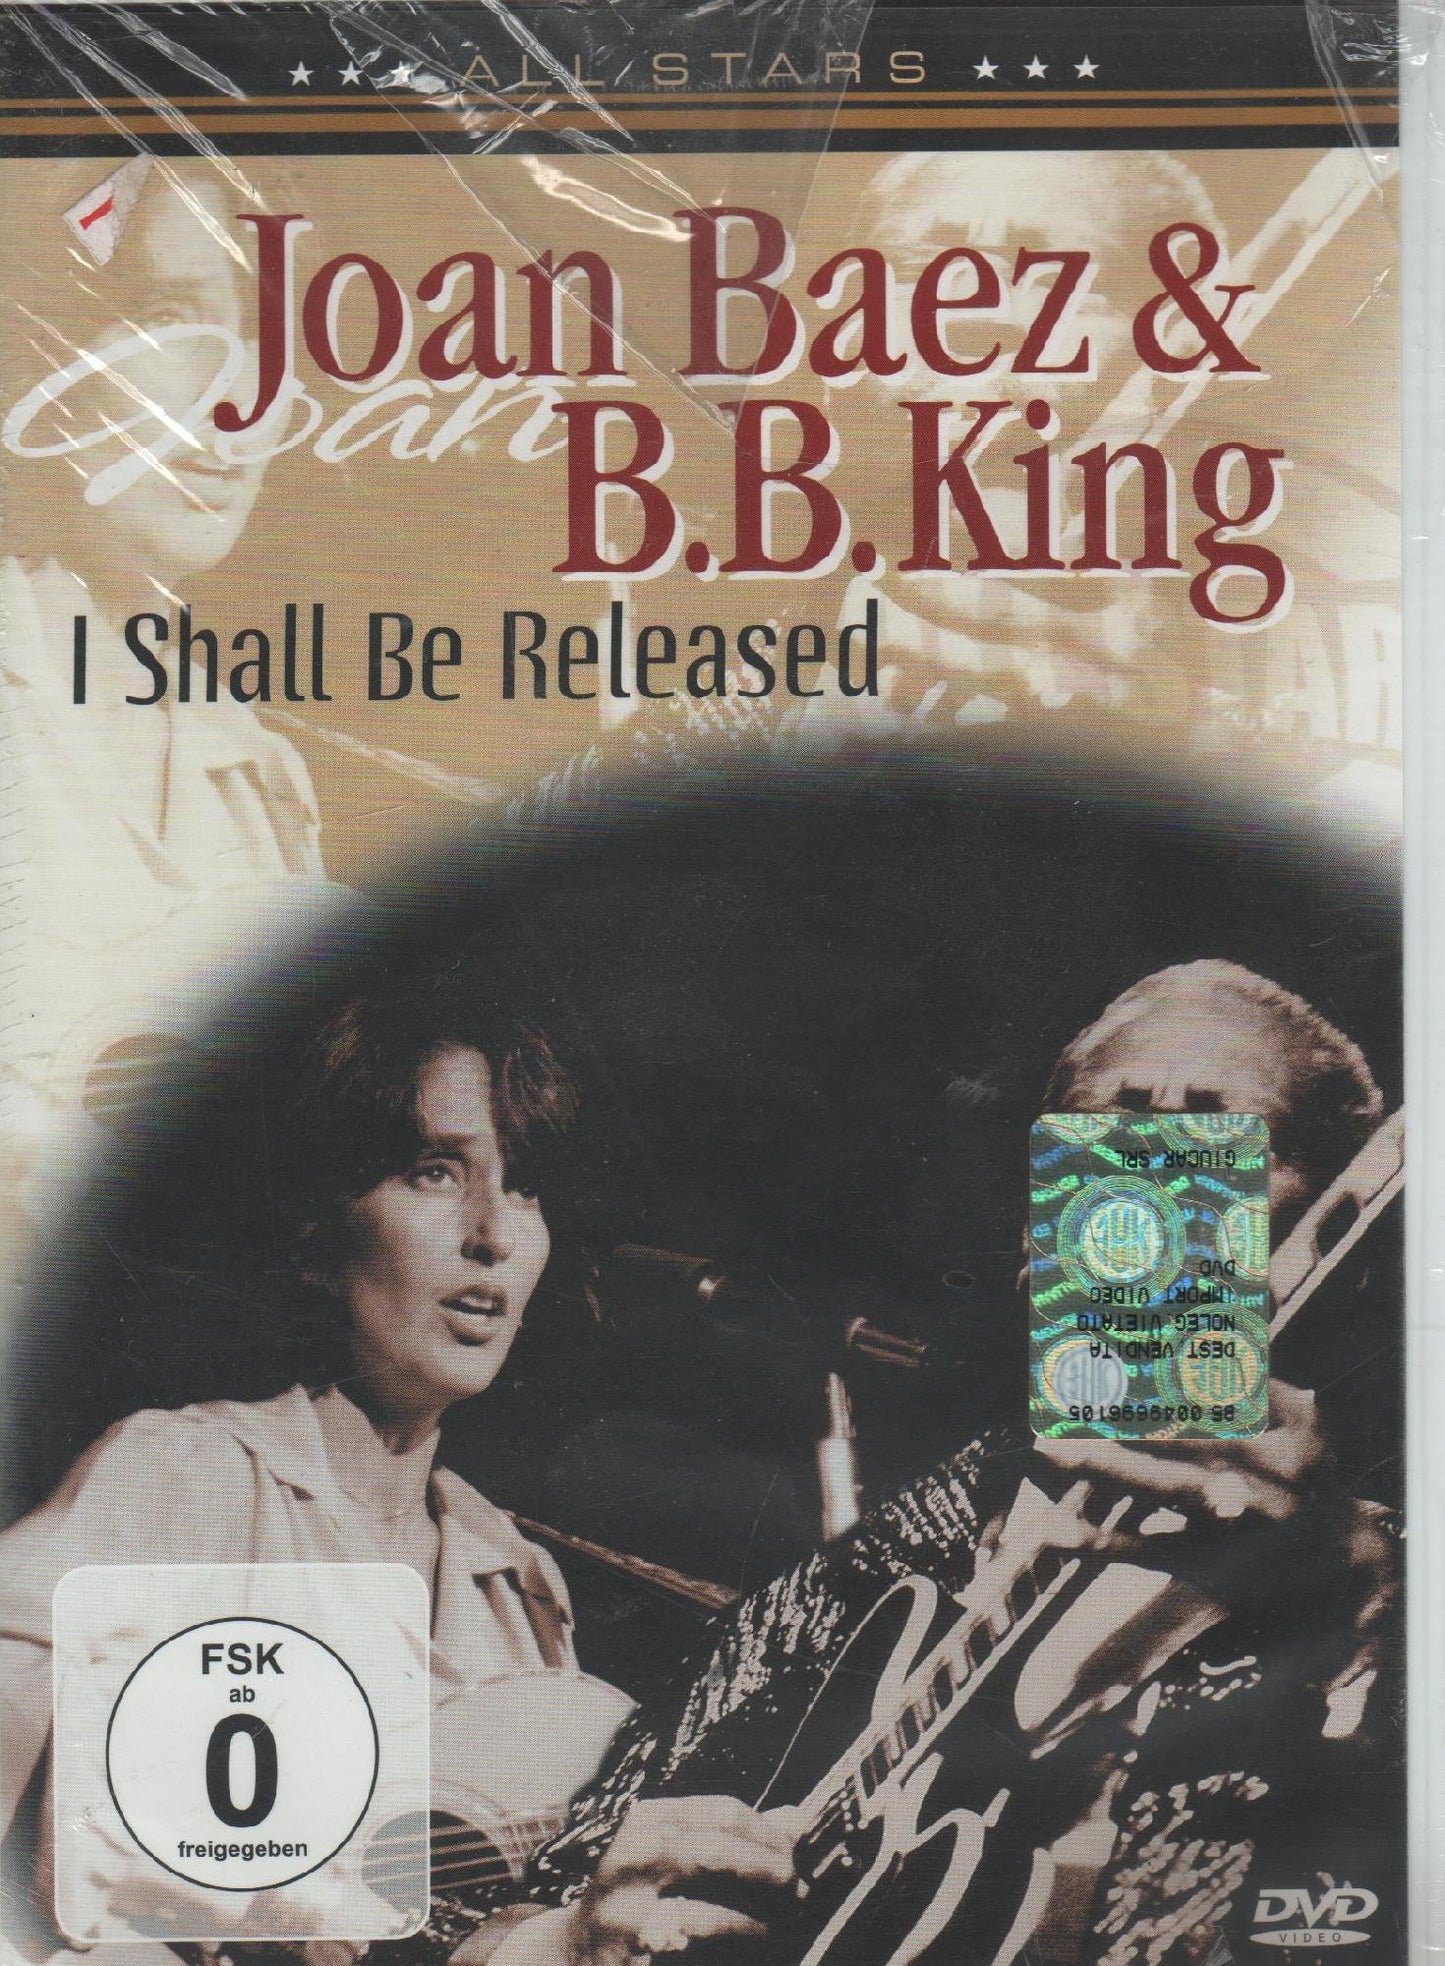 JOHN BAEZ &B.B.KING DVD